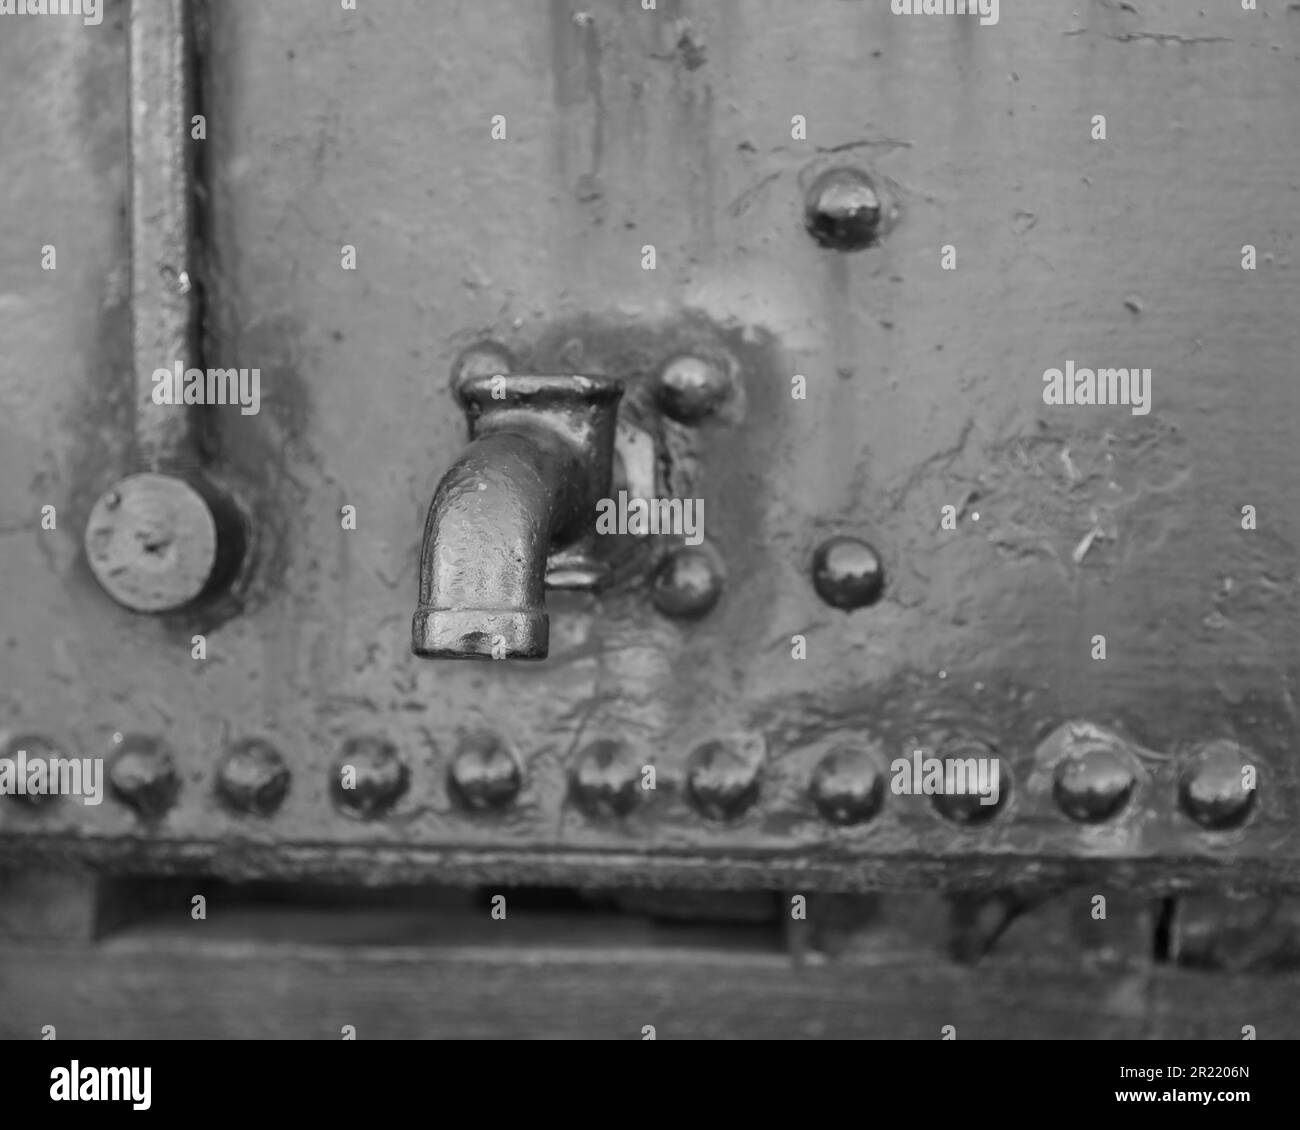 Un primo piano in scala di grigi di un rubinetto d'acciaio su una superficie metallica Foto Stock